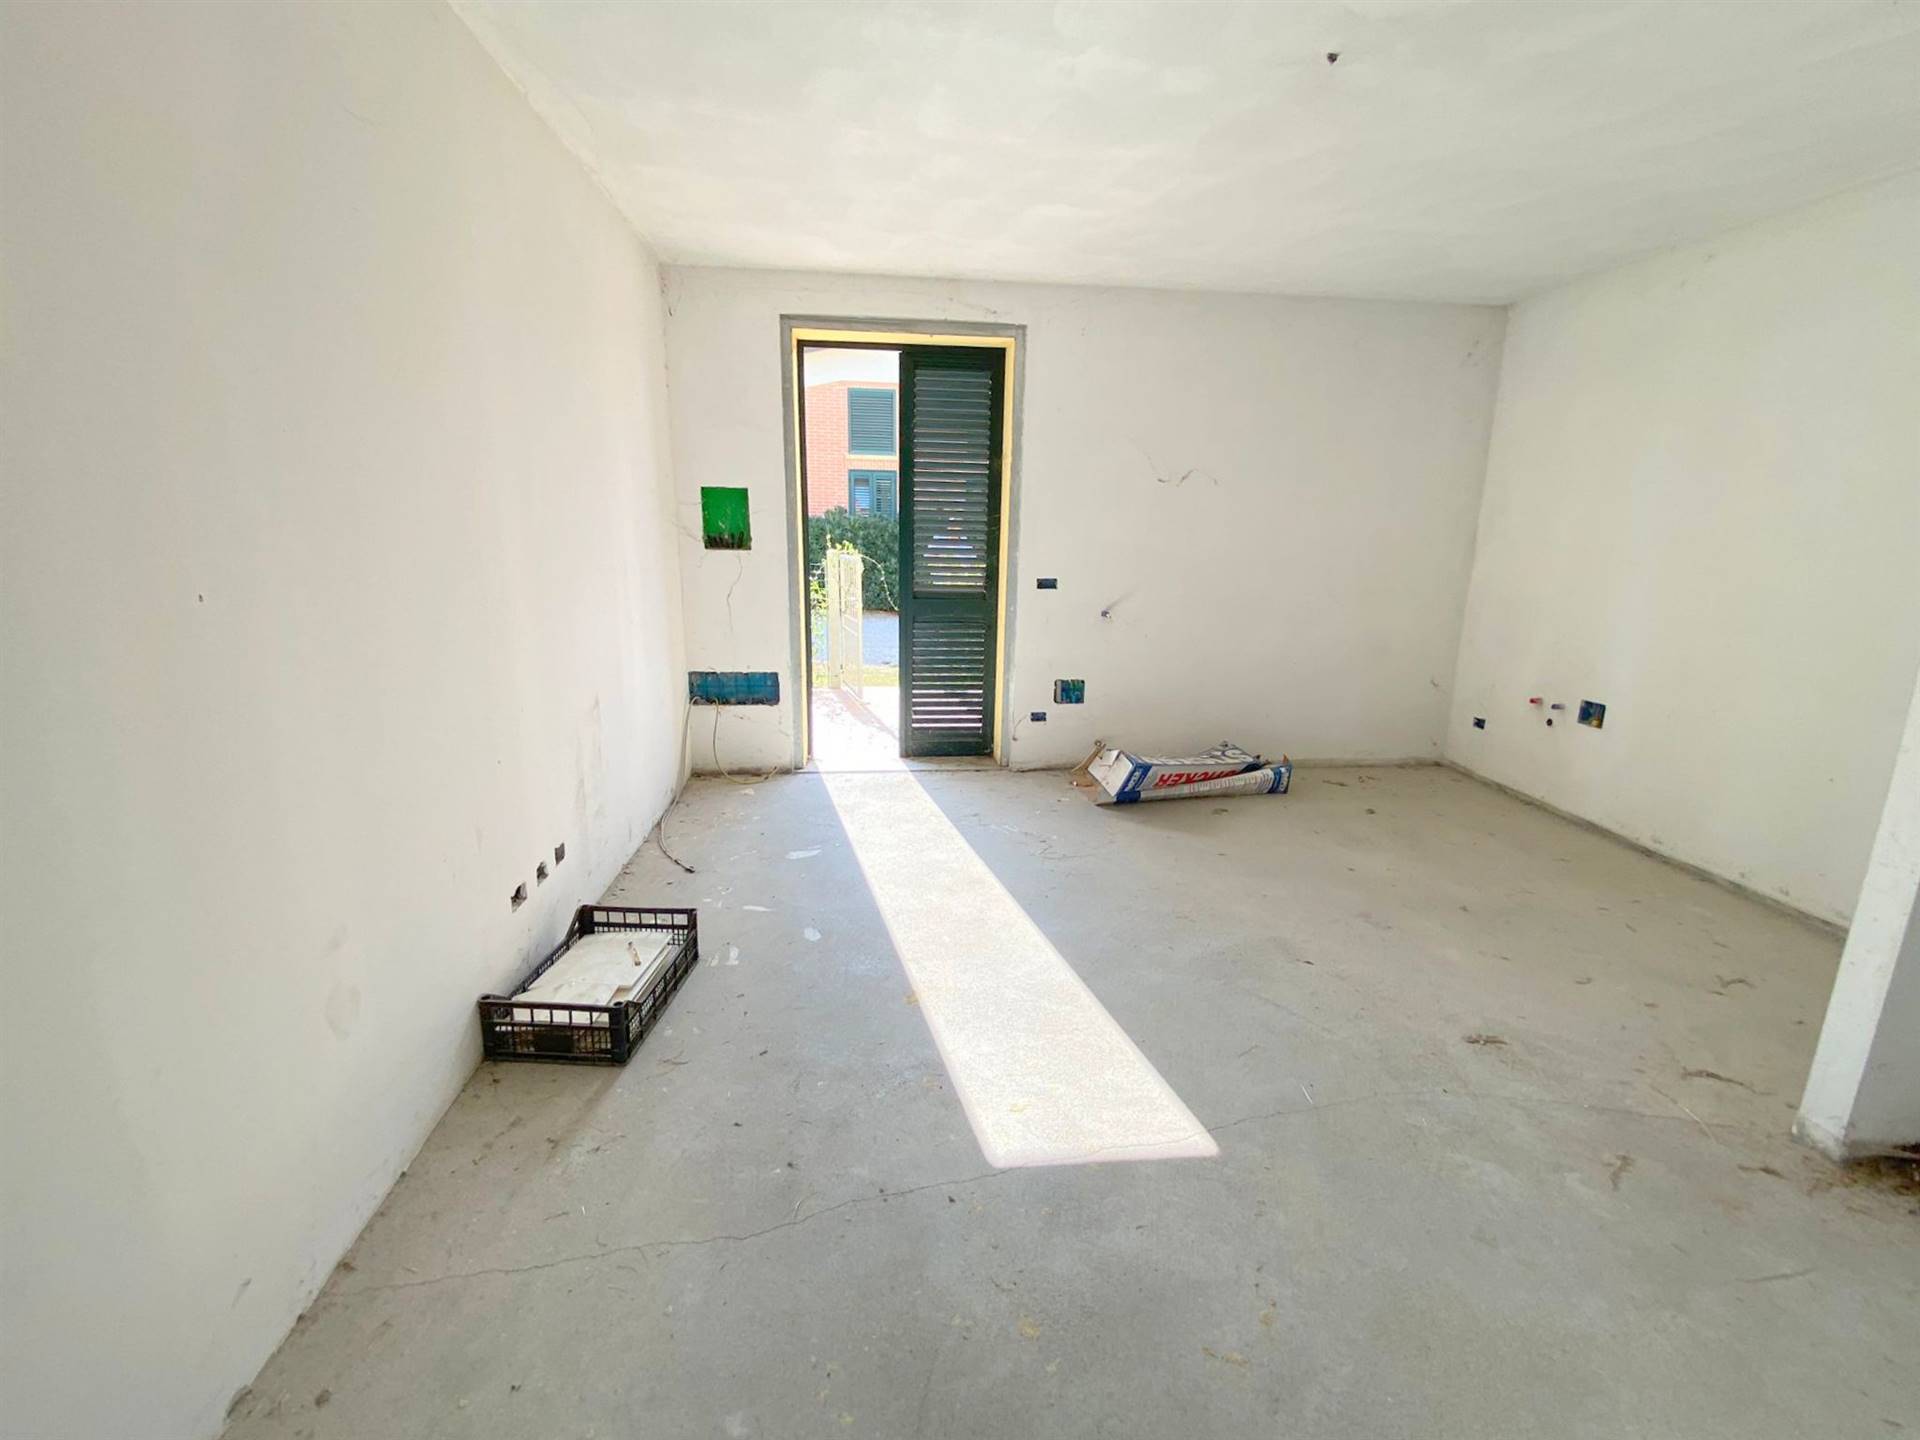 Appartamento indipendente in nuova costruzione in zona Vada a Rosignano Marittimo